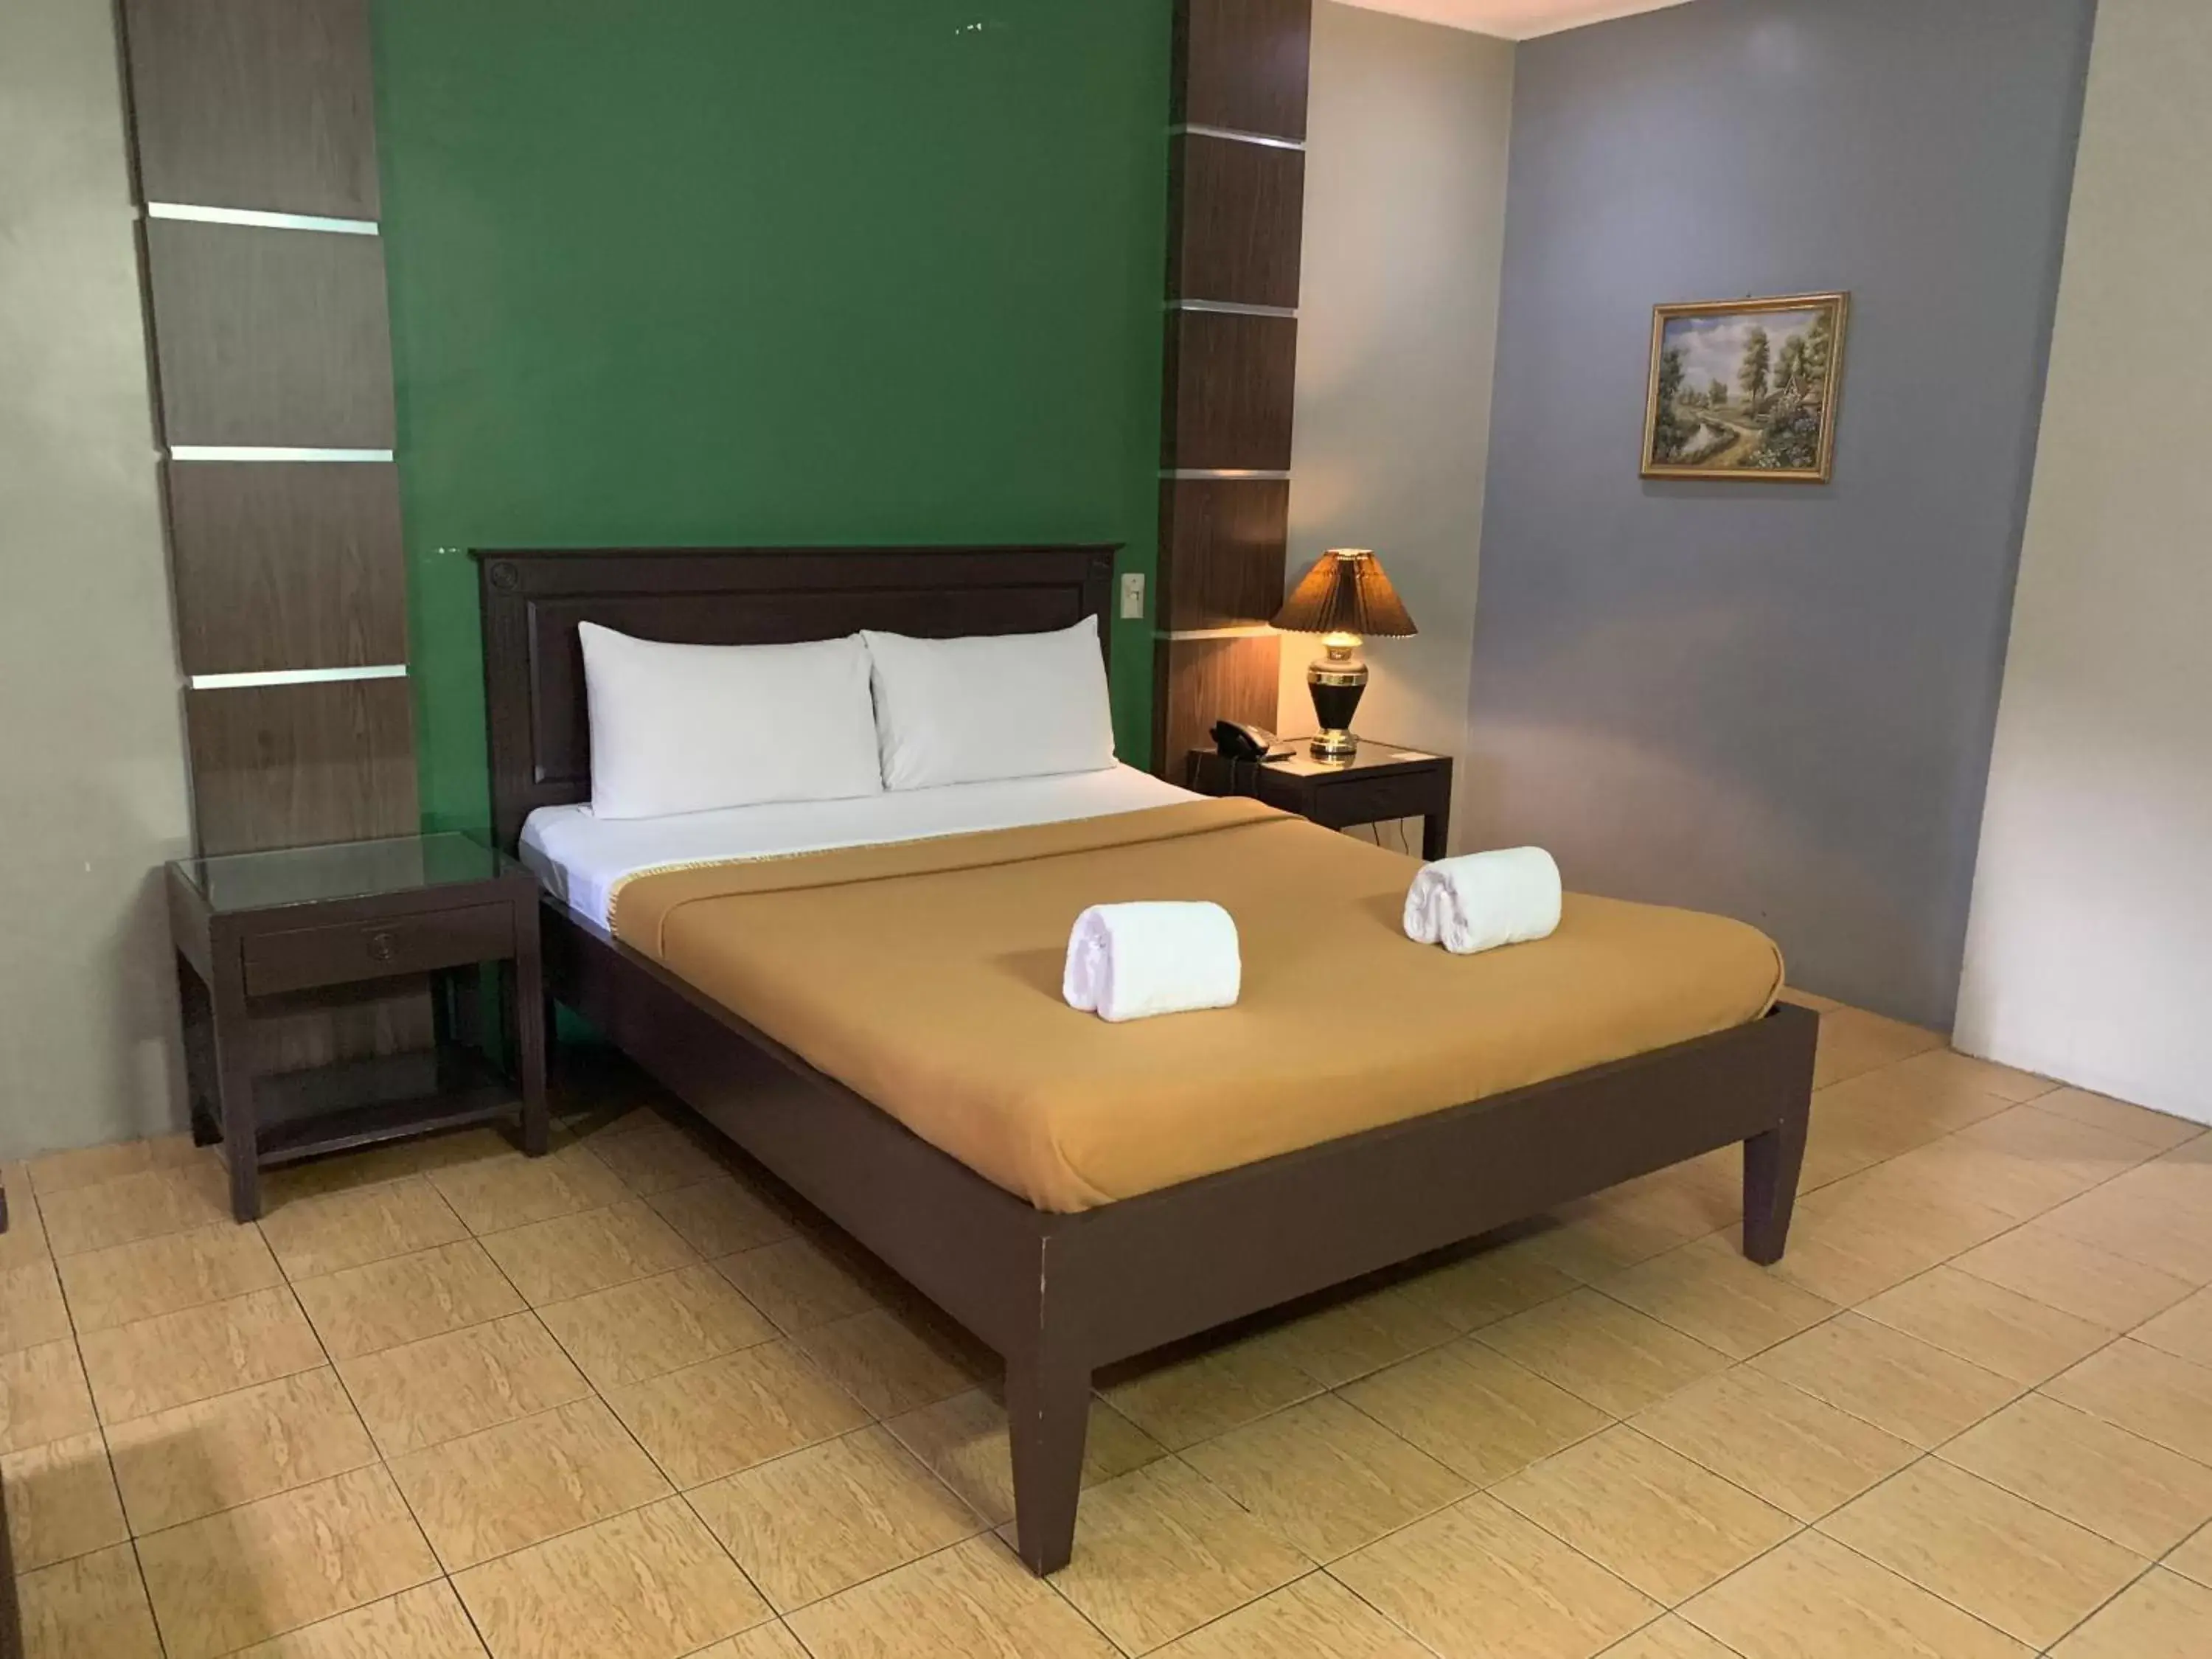 Bed in La Maja Rica Hotel